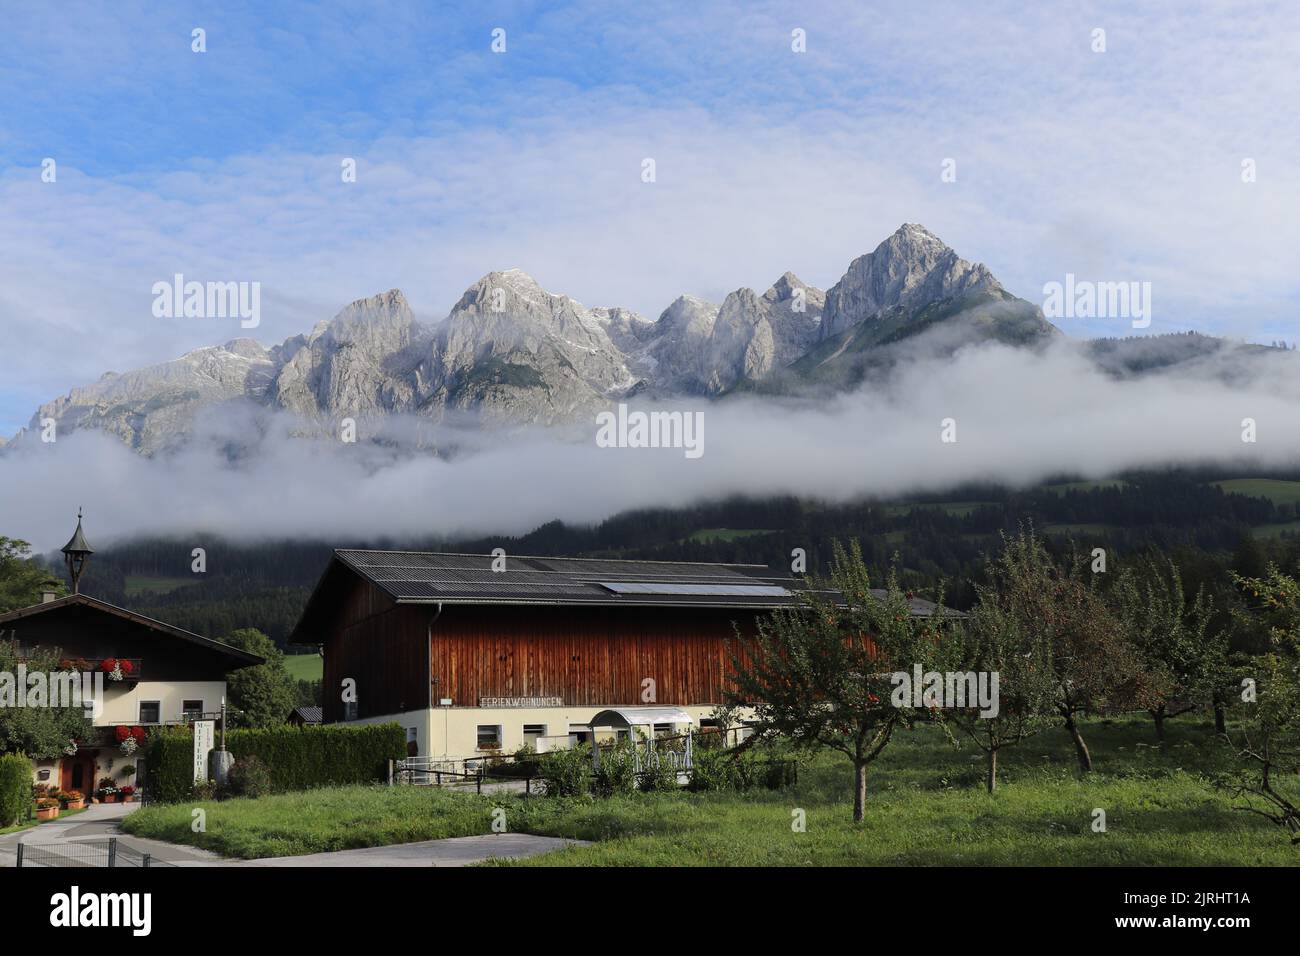 Landhaus in einer kleinen Stadt in Deutschland mit einer schönen Berge auf der Rückseite und den Wolken perfekt eine Linie auf dem Dach des Hauses. Ländliches Hotel Stockfoto